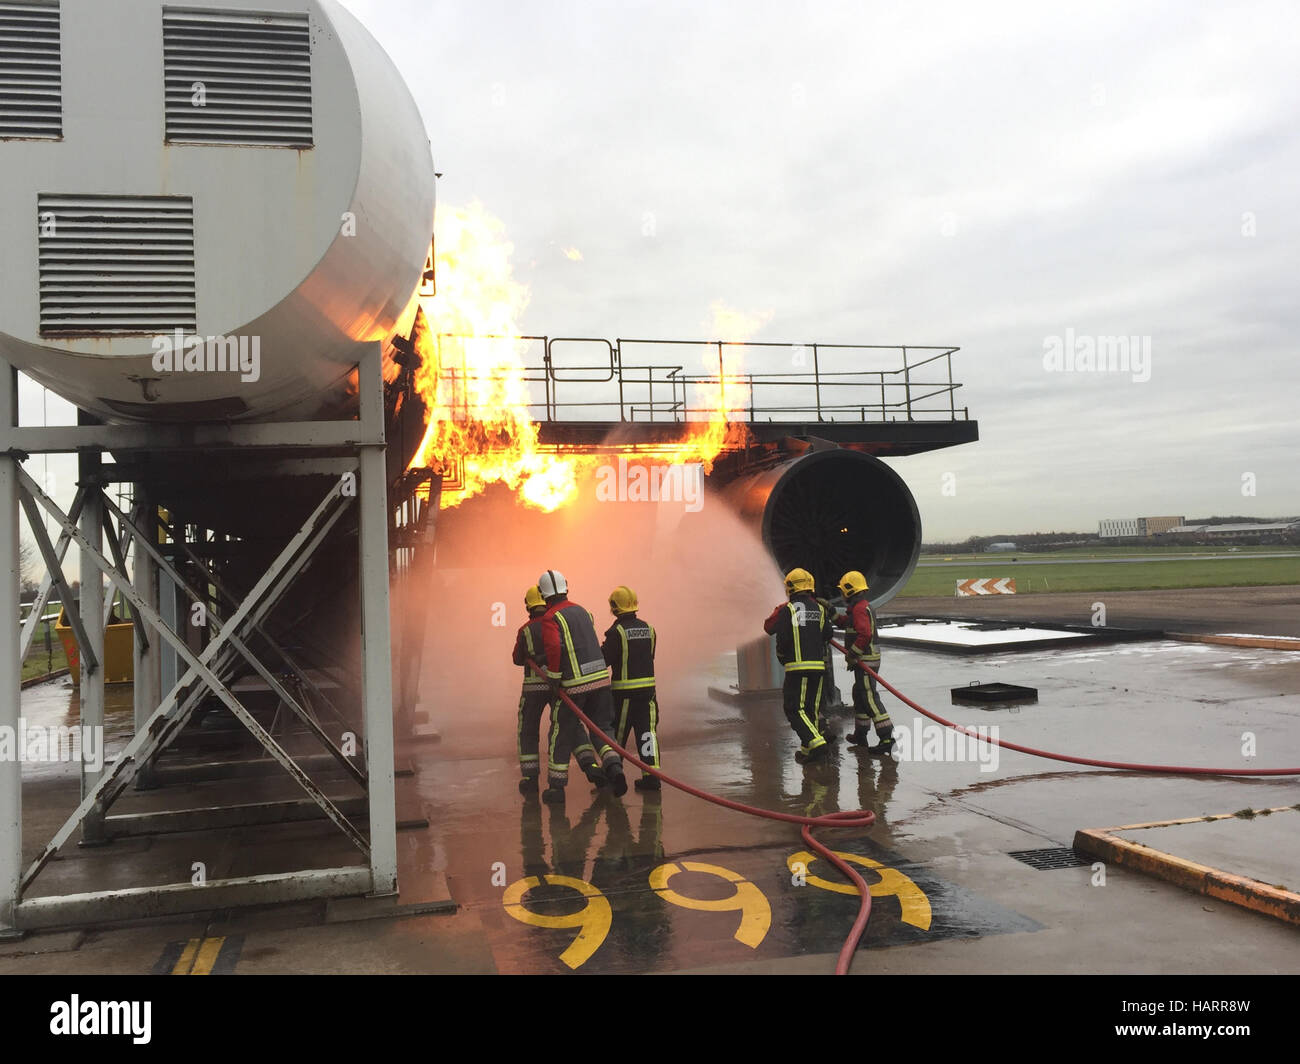 D'incendie et de secours de l'aéroport train sur un incendie simulé sur une aile d'avion à l'aéroport de East Midlands au Royaume-Uni. Banque D'Images